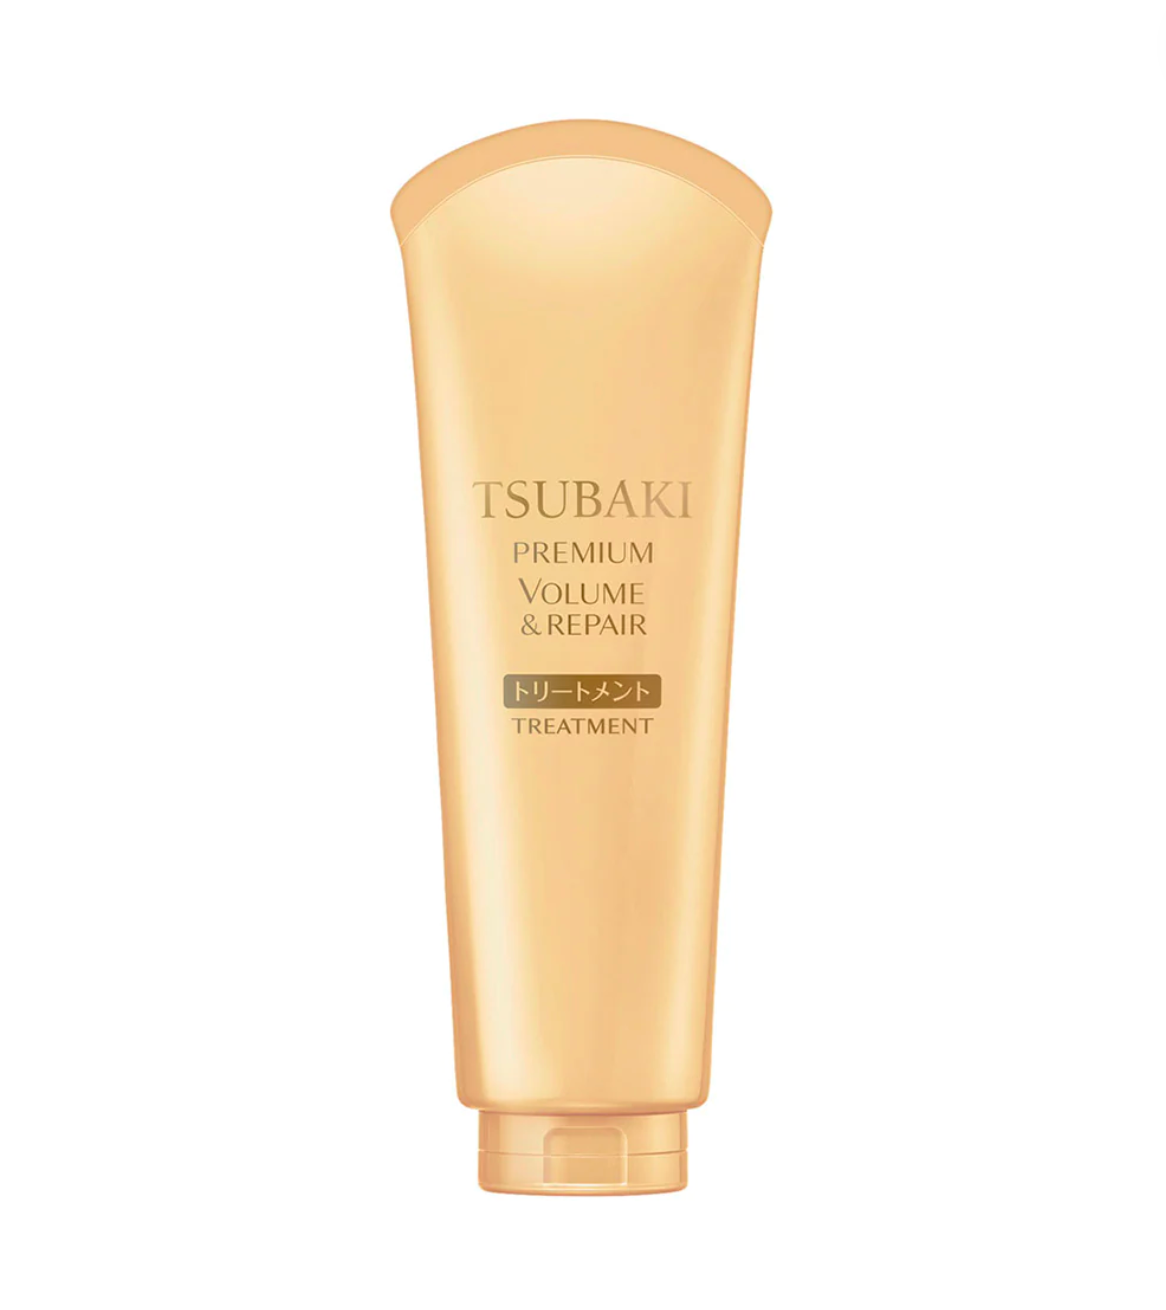 TSUBAKI – Premium Volume & Repair Hair Treatment 180g